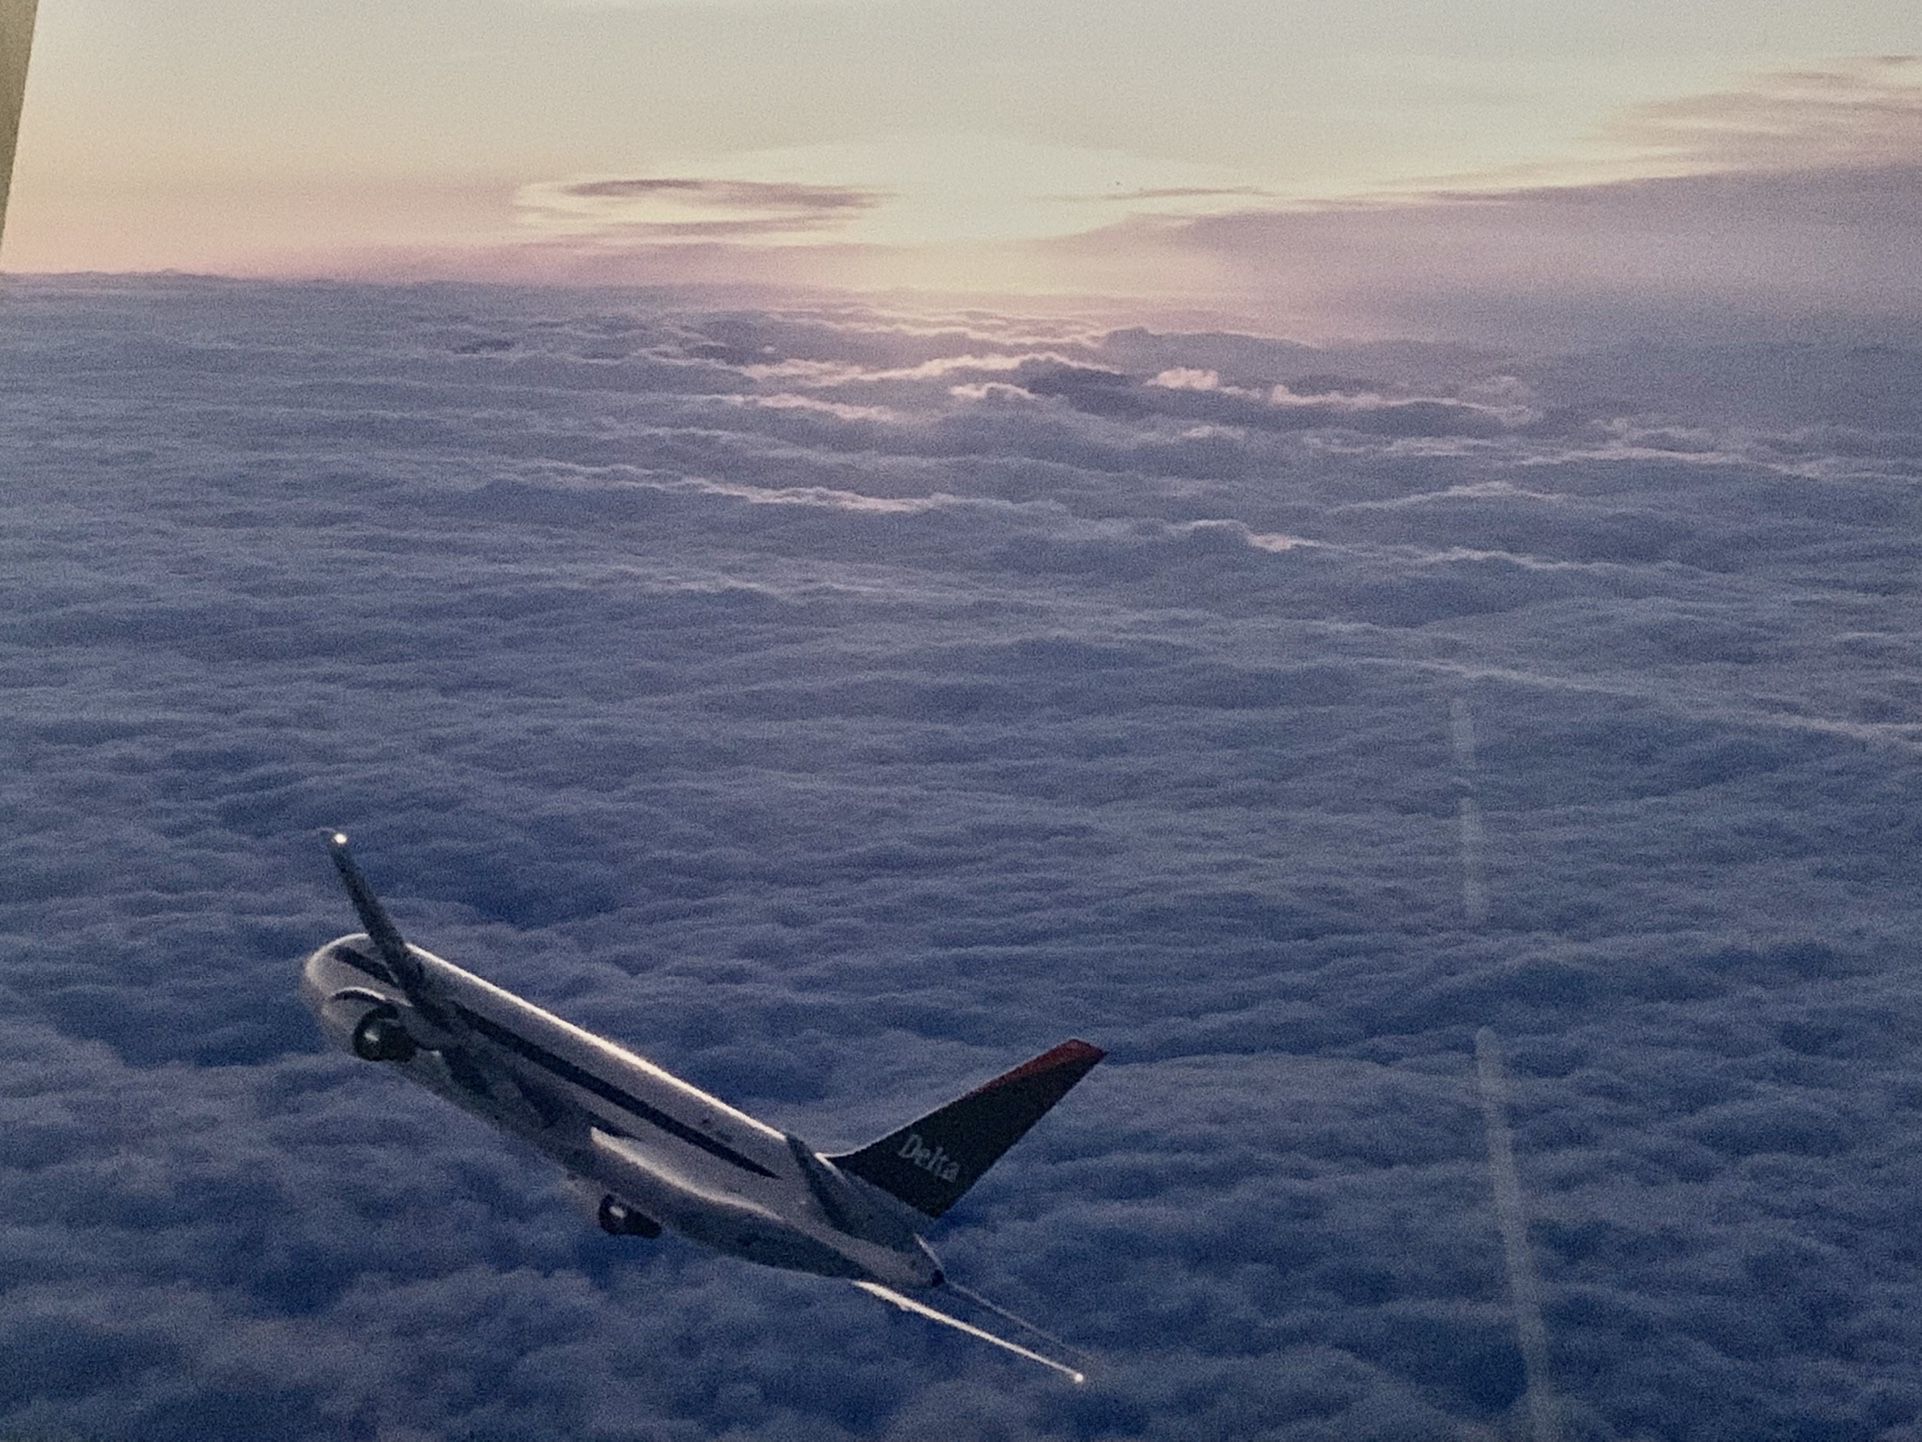 Delta Airplane In Flight 